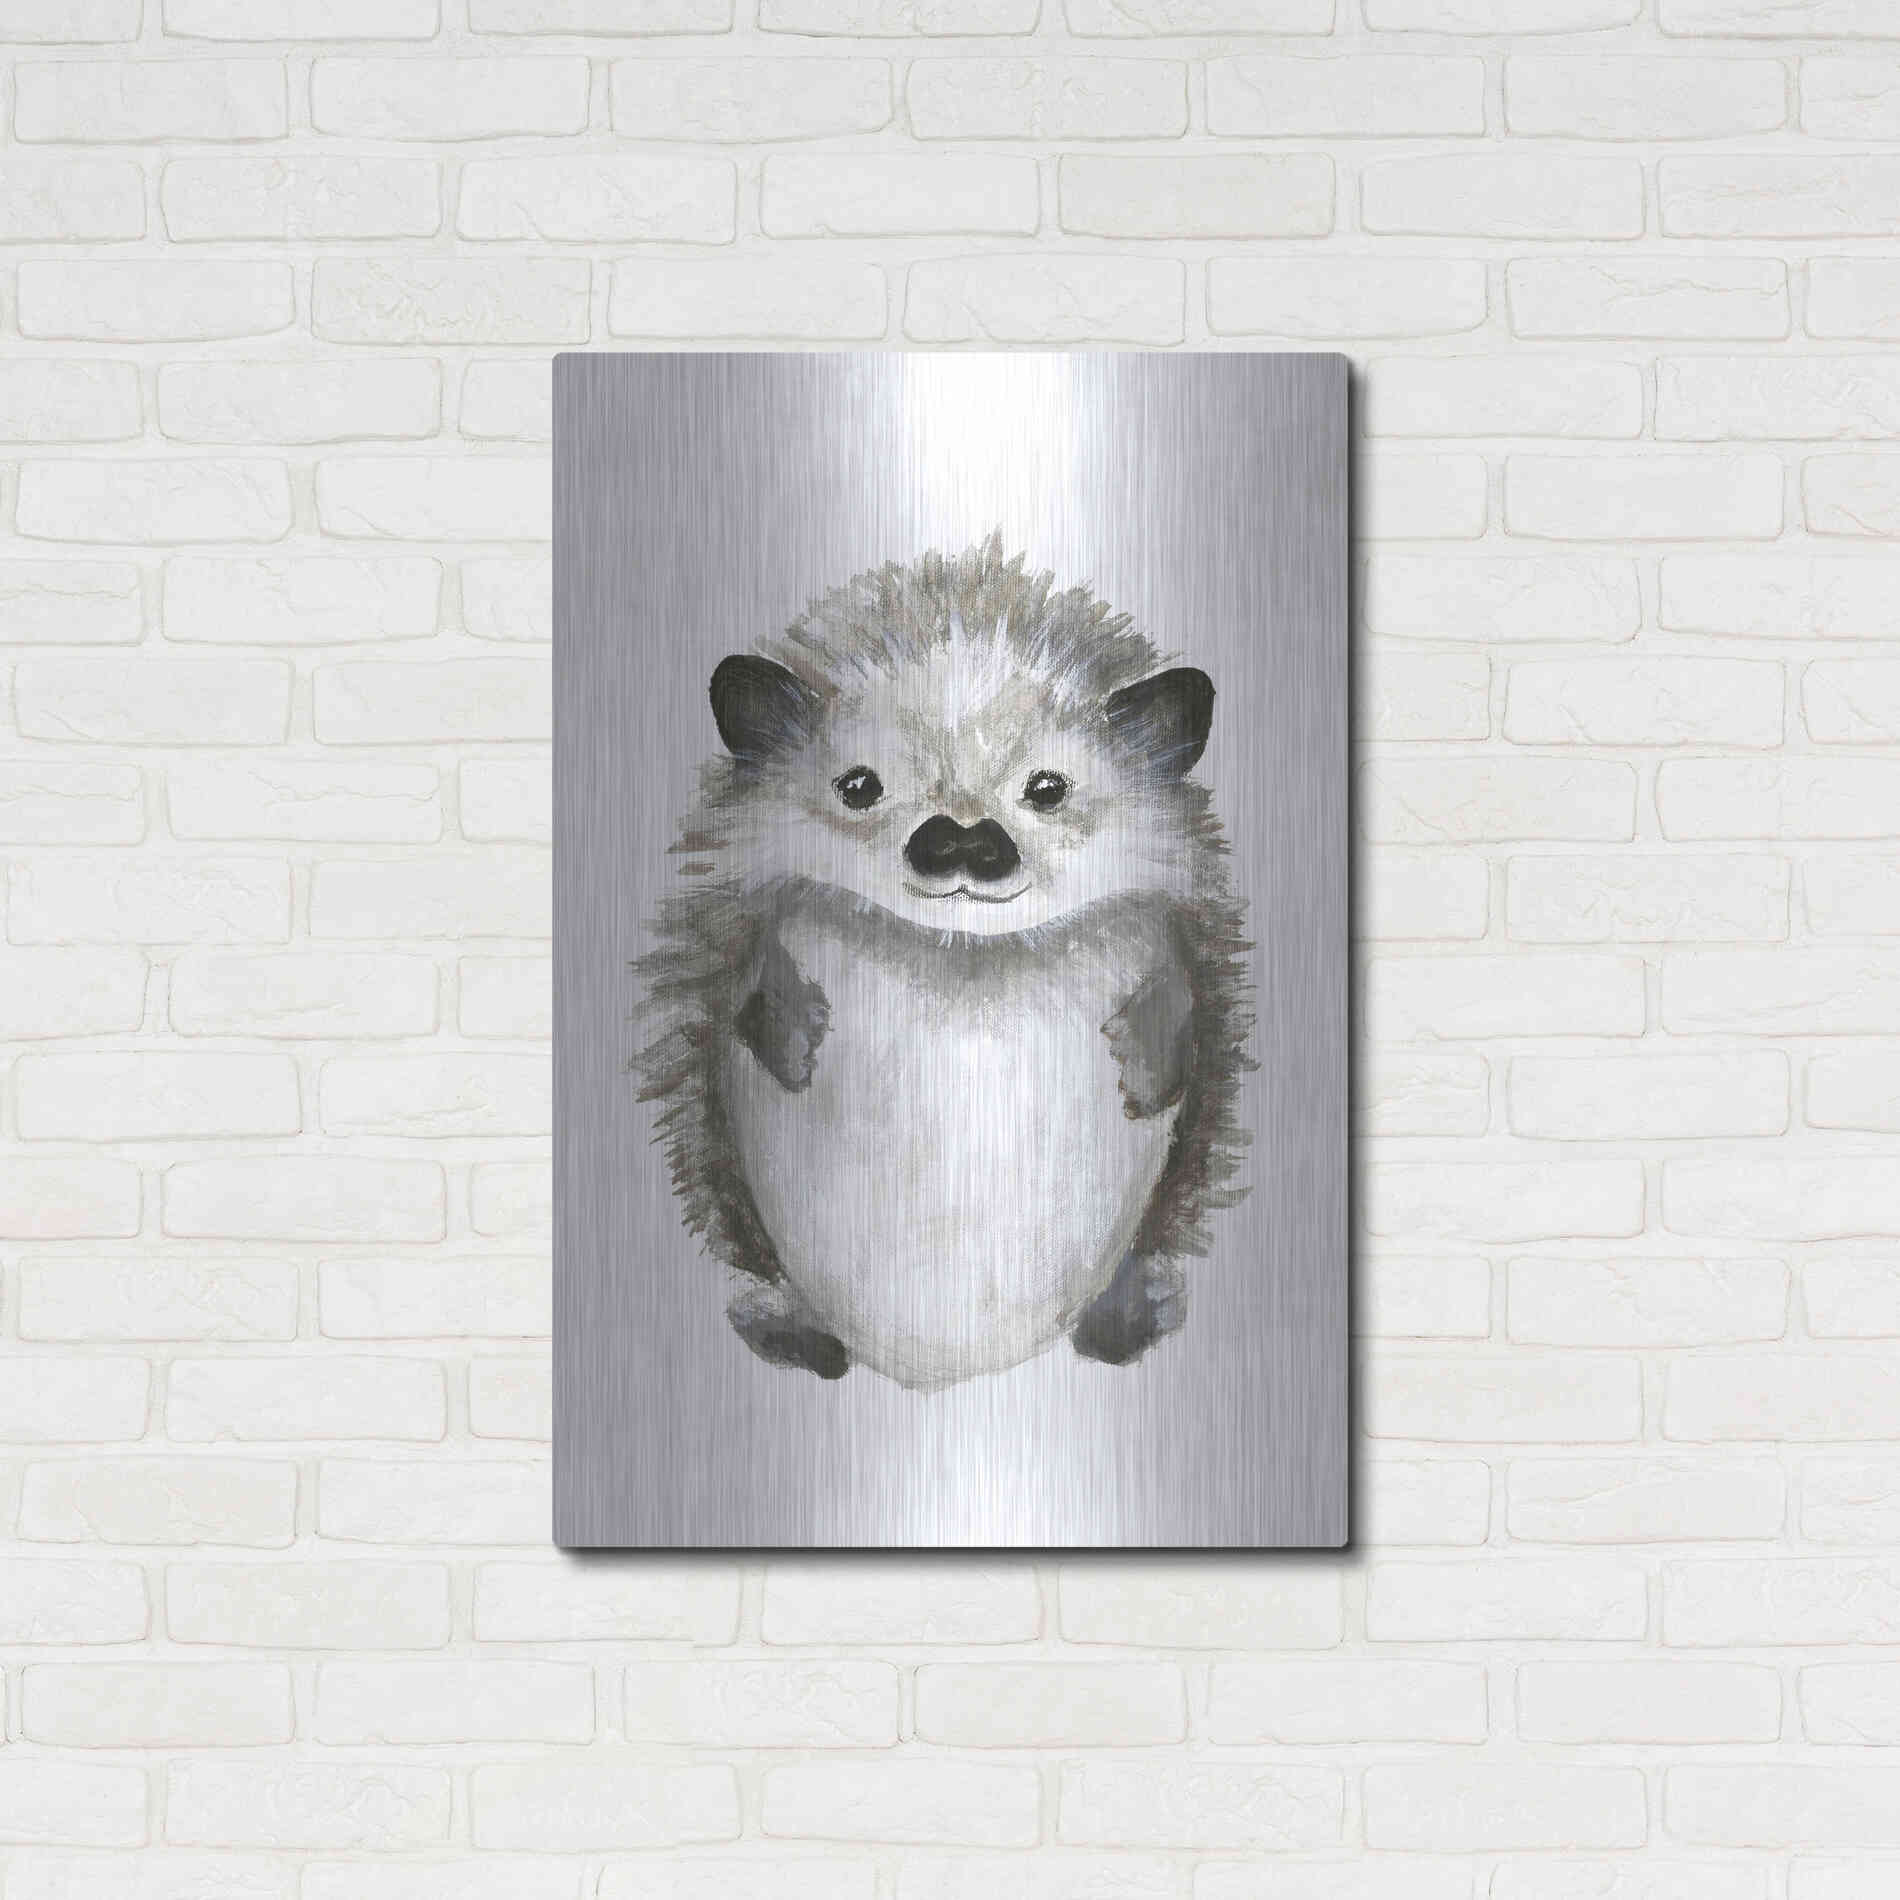 Luxe Metal Art 'Little Hedgehog' by Design Fabrikken, Metal Wall Art,24x36